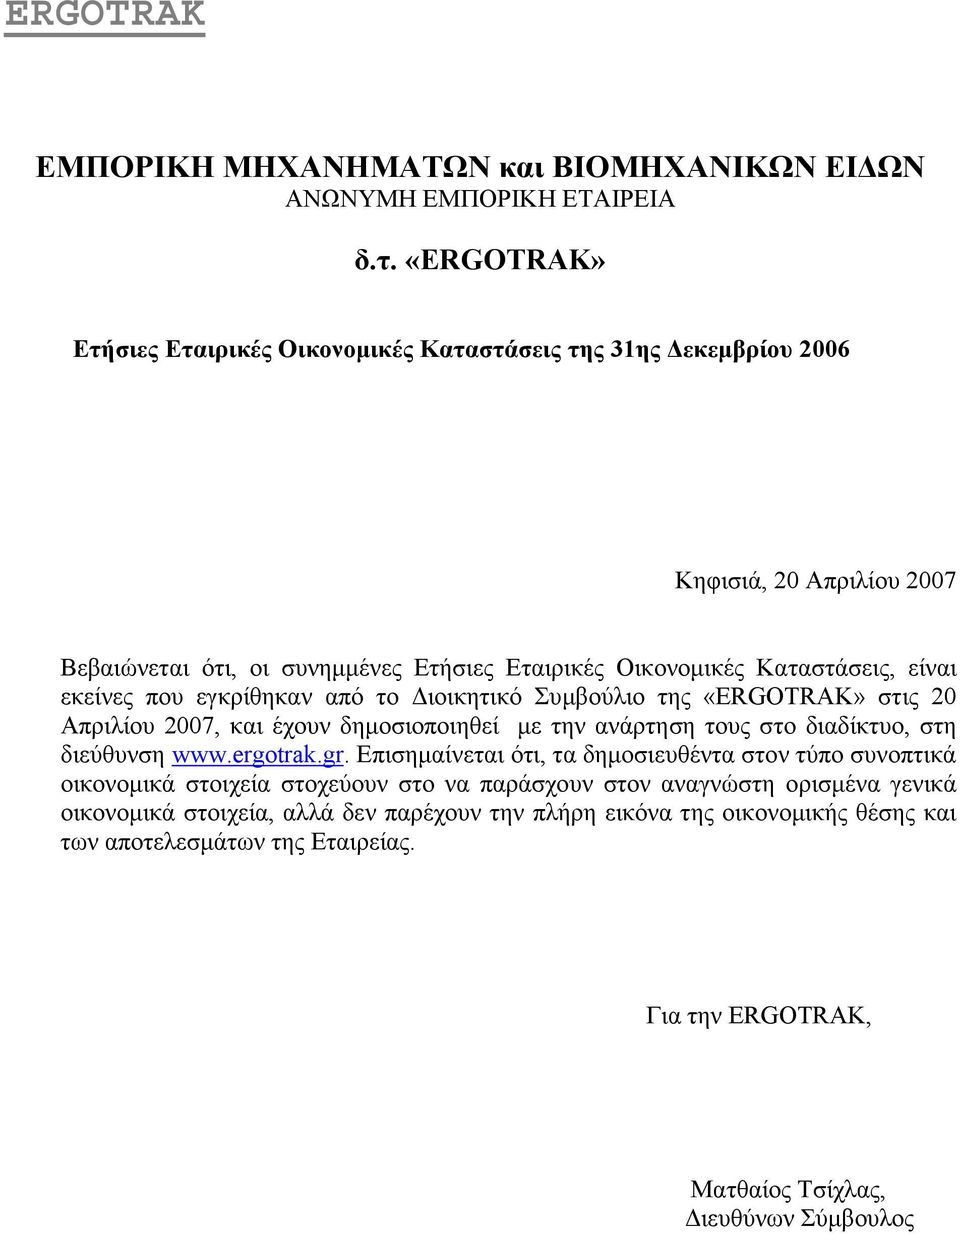 που εγκρίθηκαν από το ιοικητικό Συµβούλιο της «ERGOTRAK» στις 20 Απριλίου 2007, και έχουν δηµοσιοποιηθεί µε την ανάρτηση τους στο διαδίκτυο, στη διεύθυνση www.ergotrak.gr.